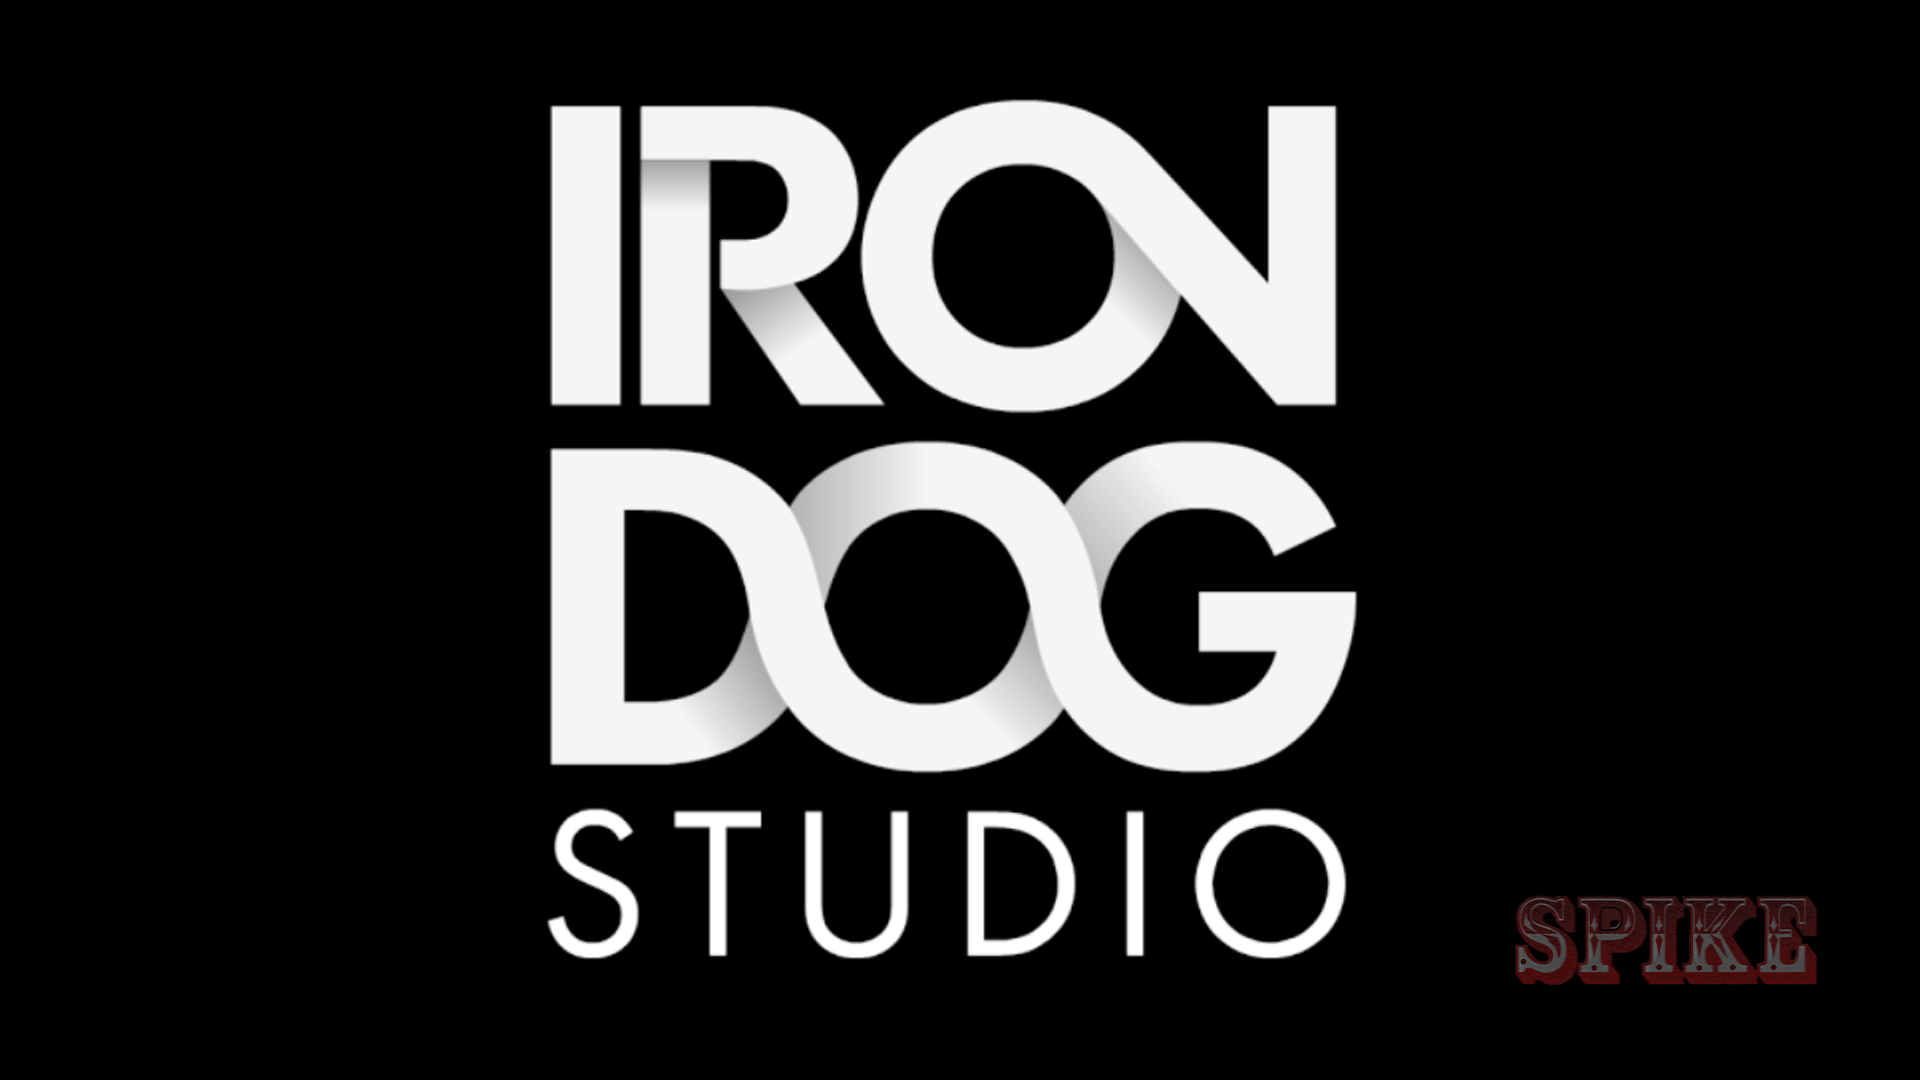 Iron Dog Studio SPIKE